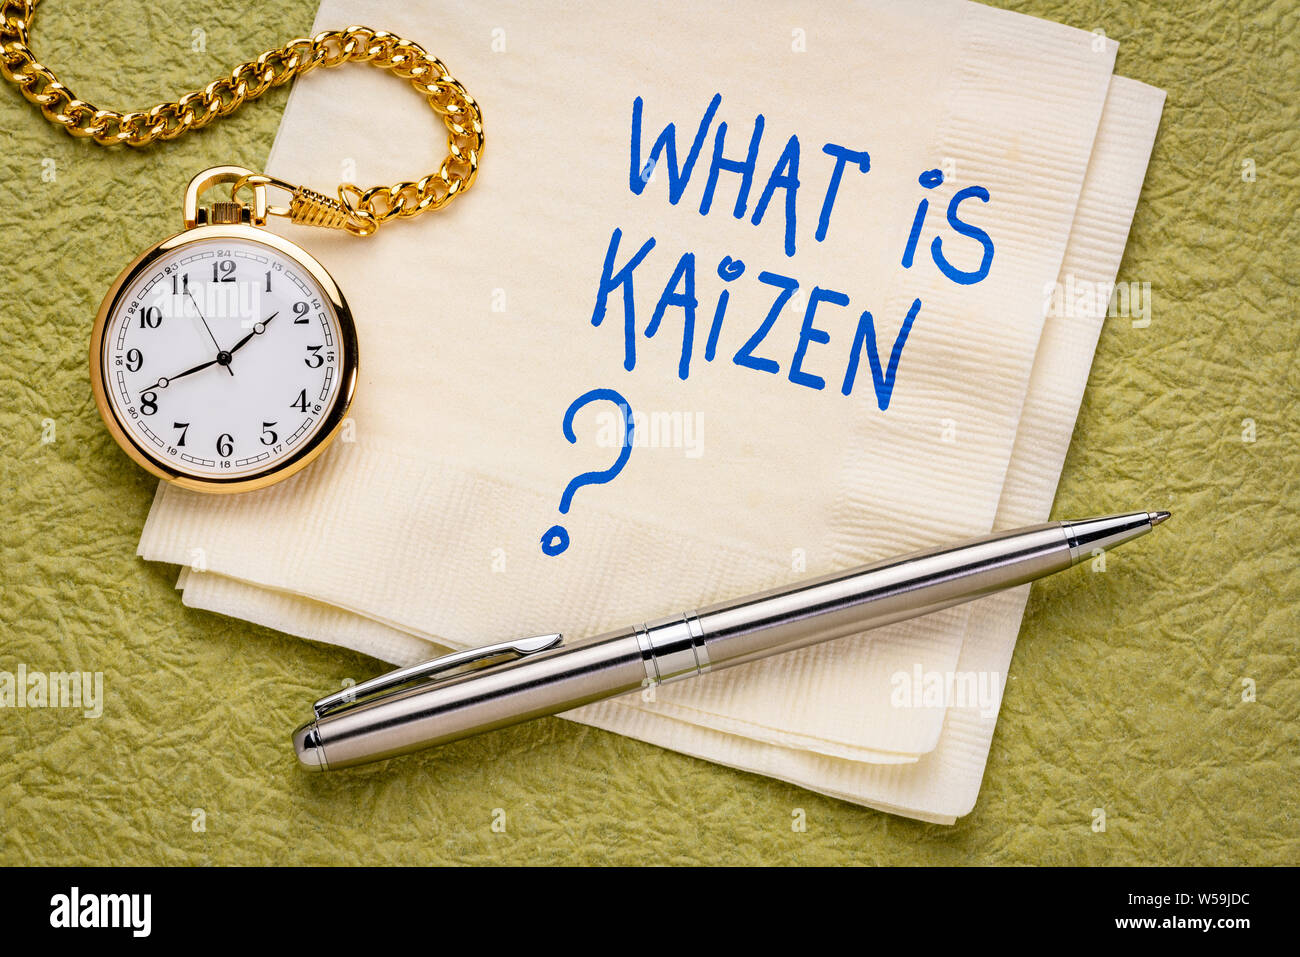 Was ist Kaizen? Japanische kontinuierliche Verbesserung Konzept - Handschrift auf eine Serviette mit einer Taschenuhr. Stockfoto